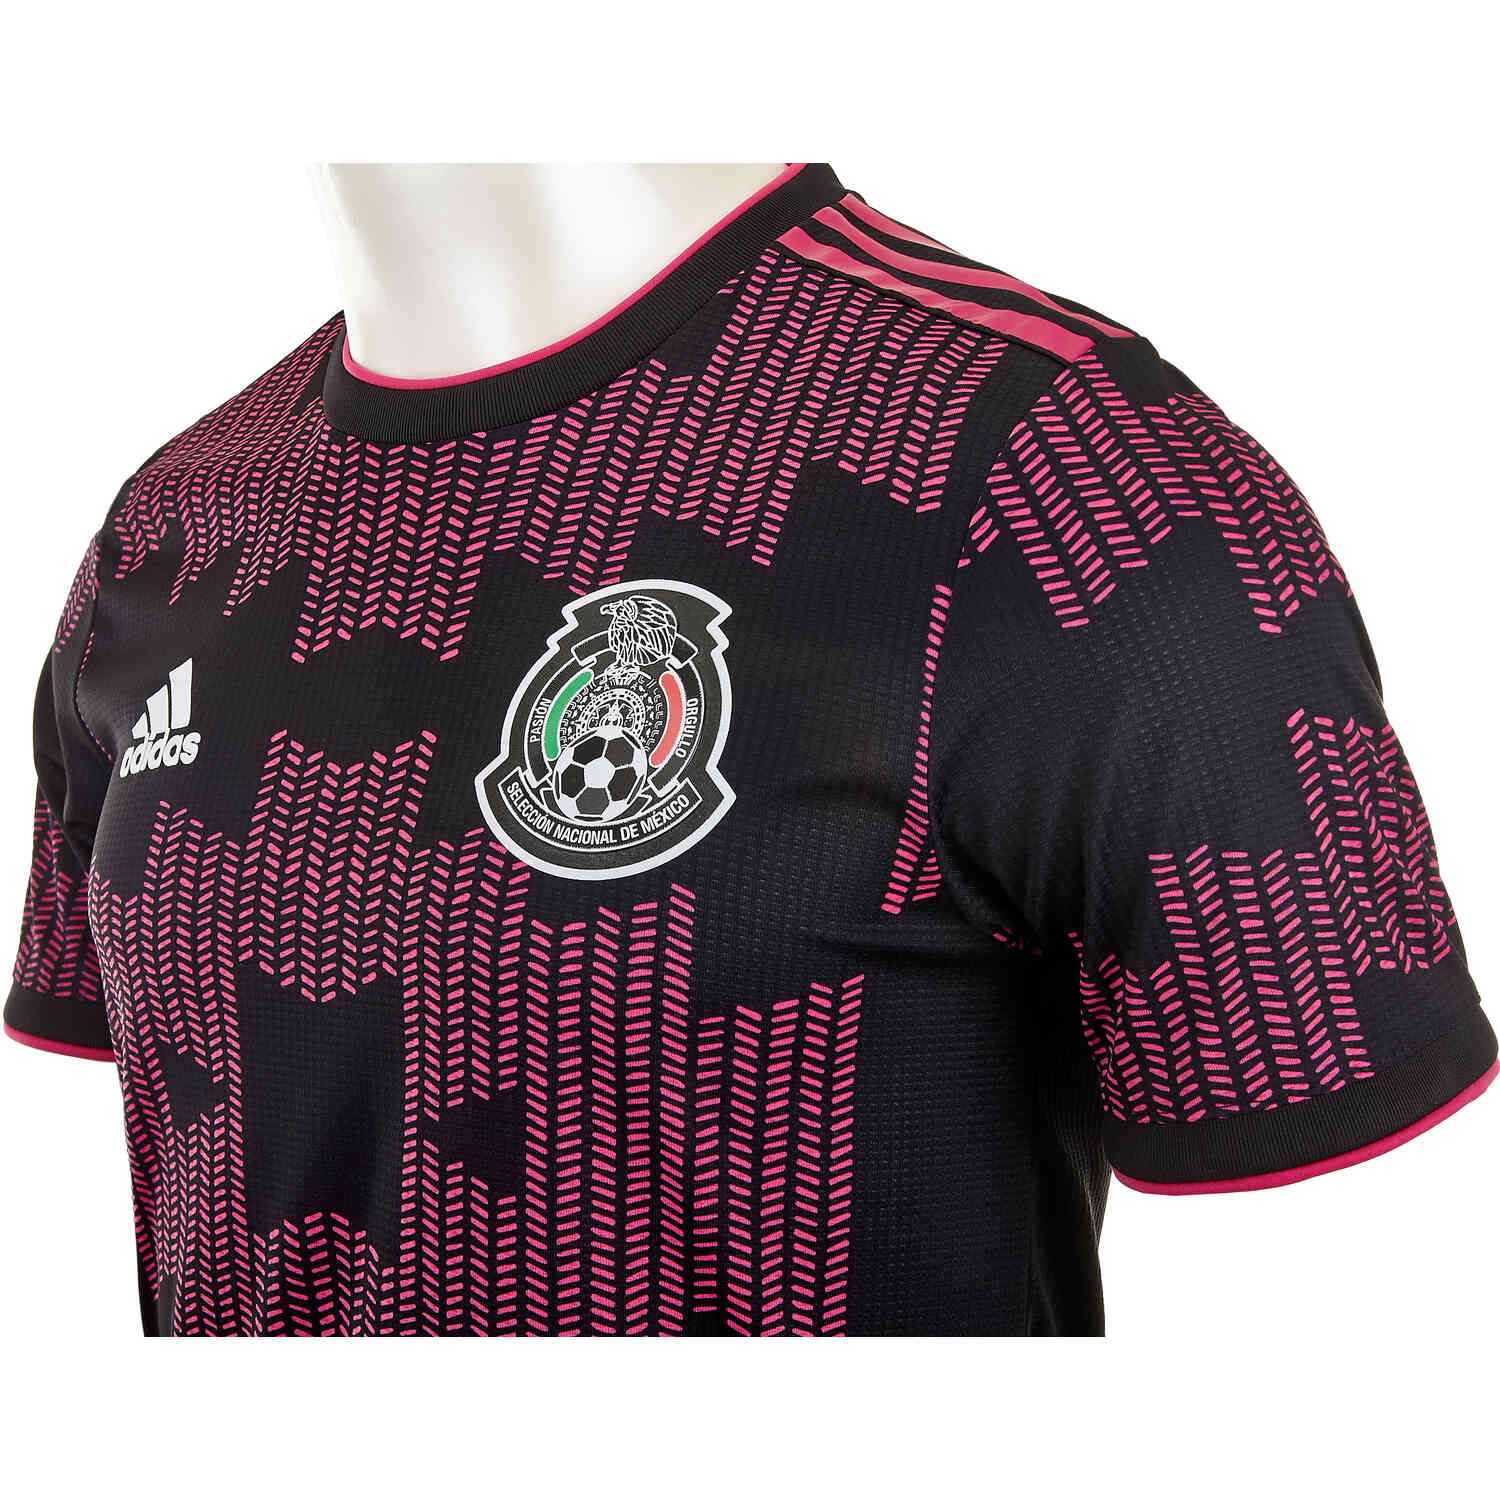 دخان تركي 2021 adidas Mexico Home Authentic Jersey - SoccerPro دخان تركي